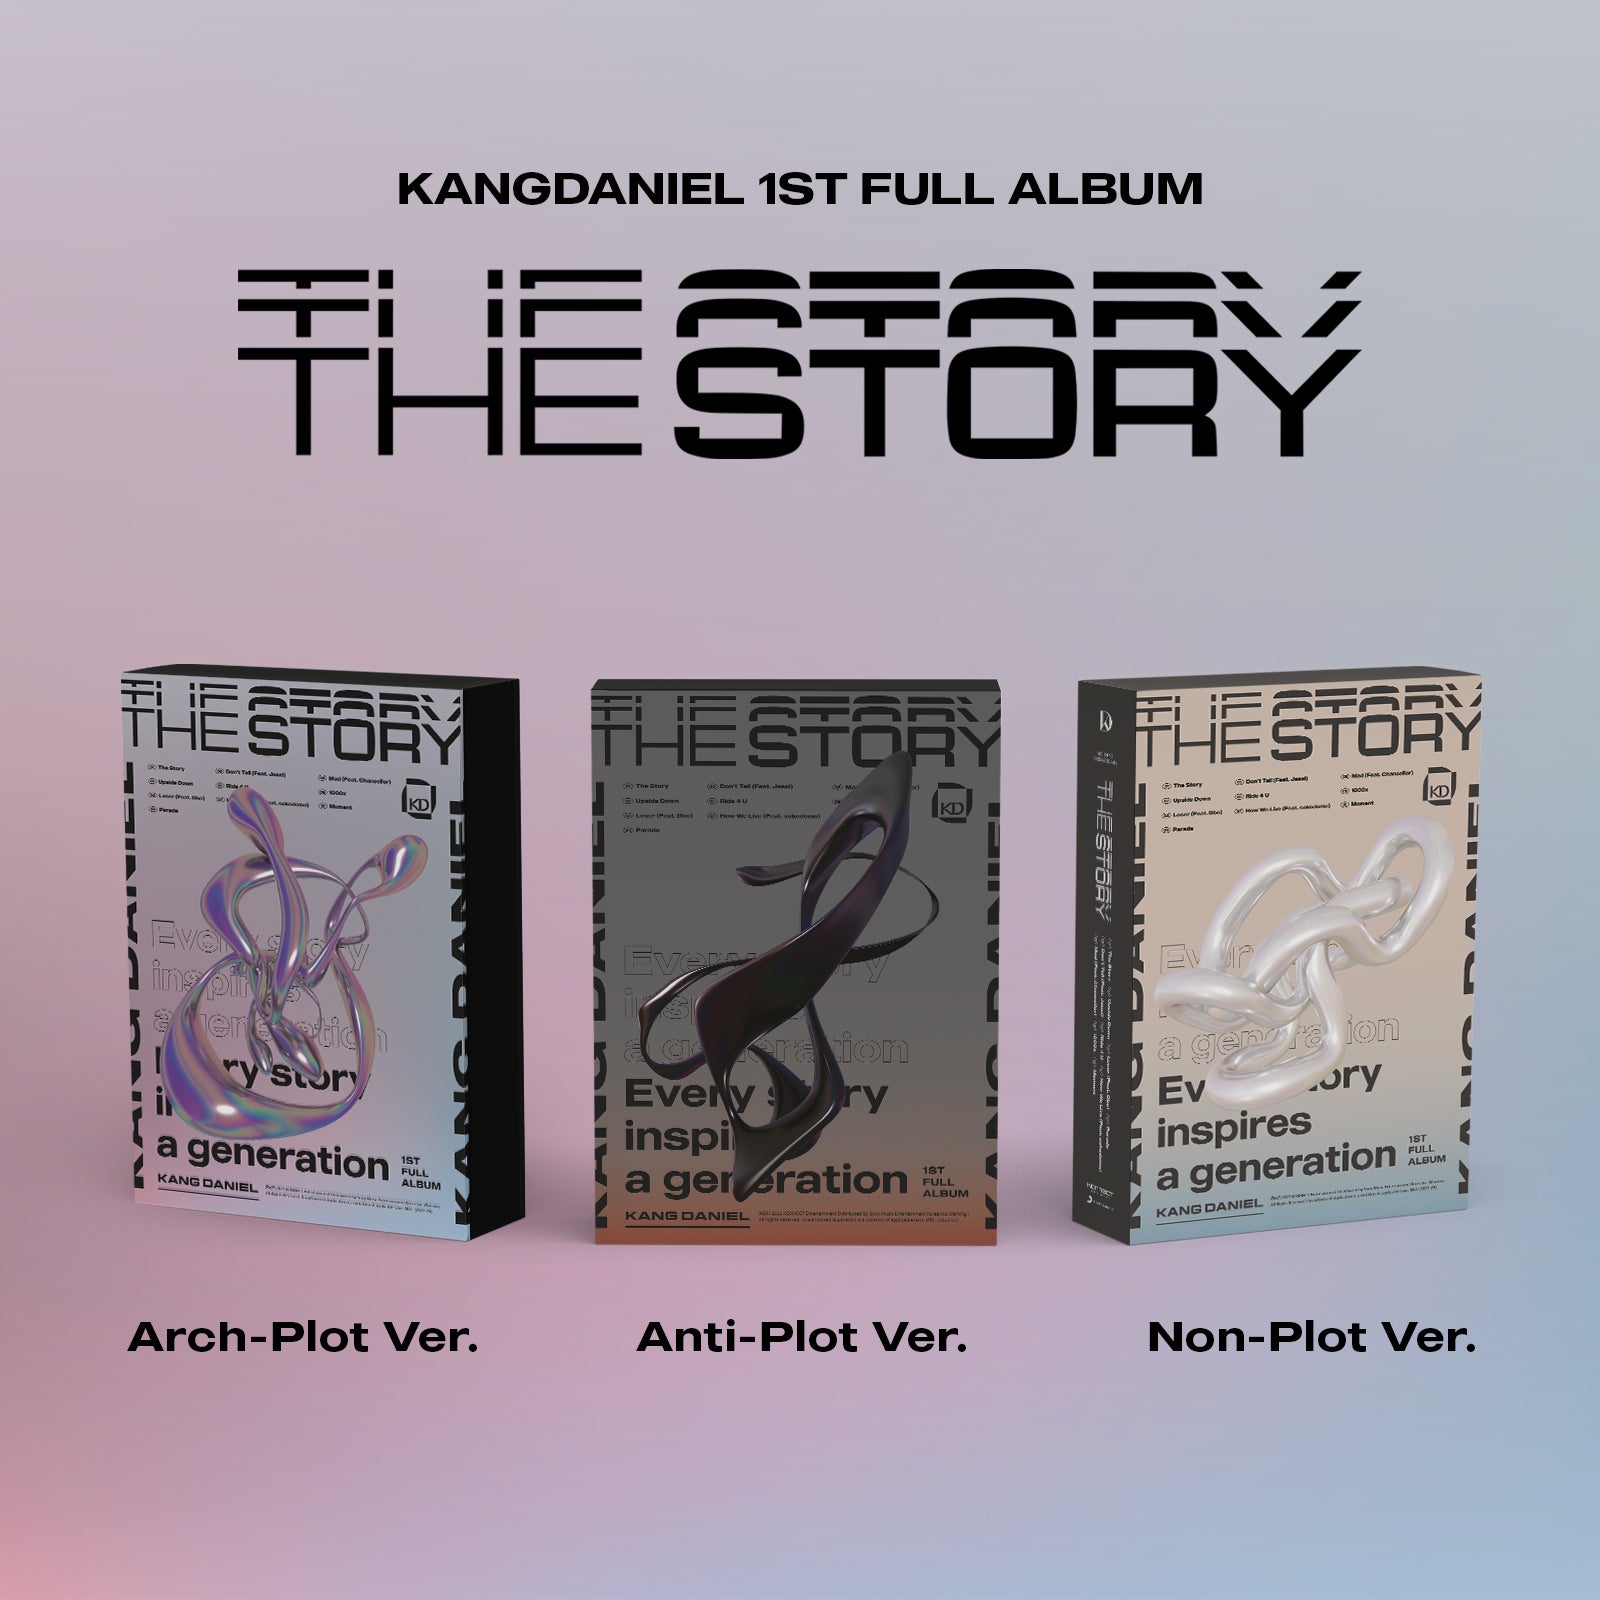 KANG DANIEL 1ST FULL ALBUM 'THE STORY' COVER